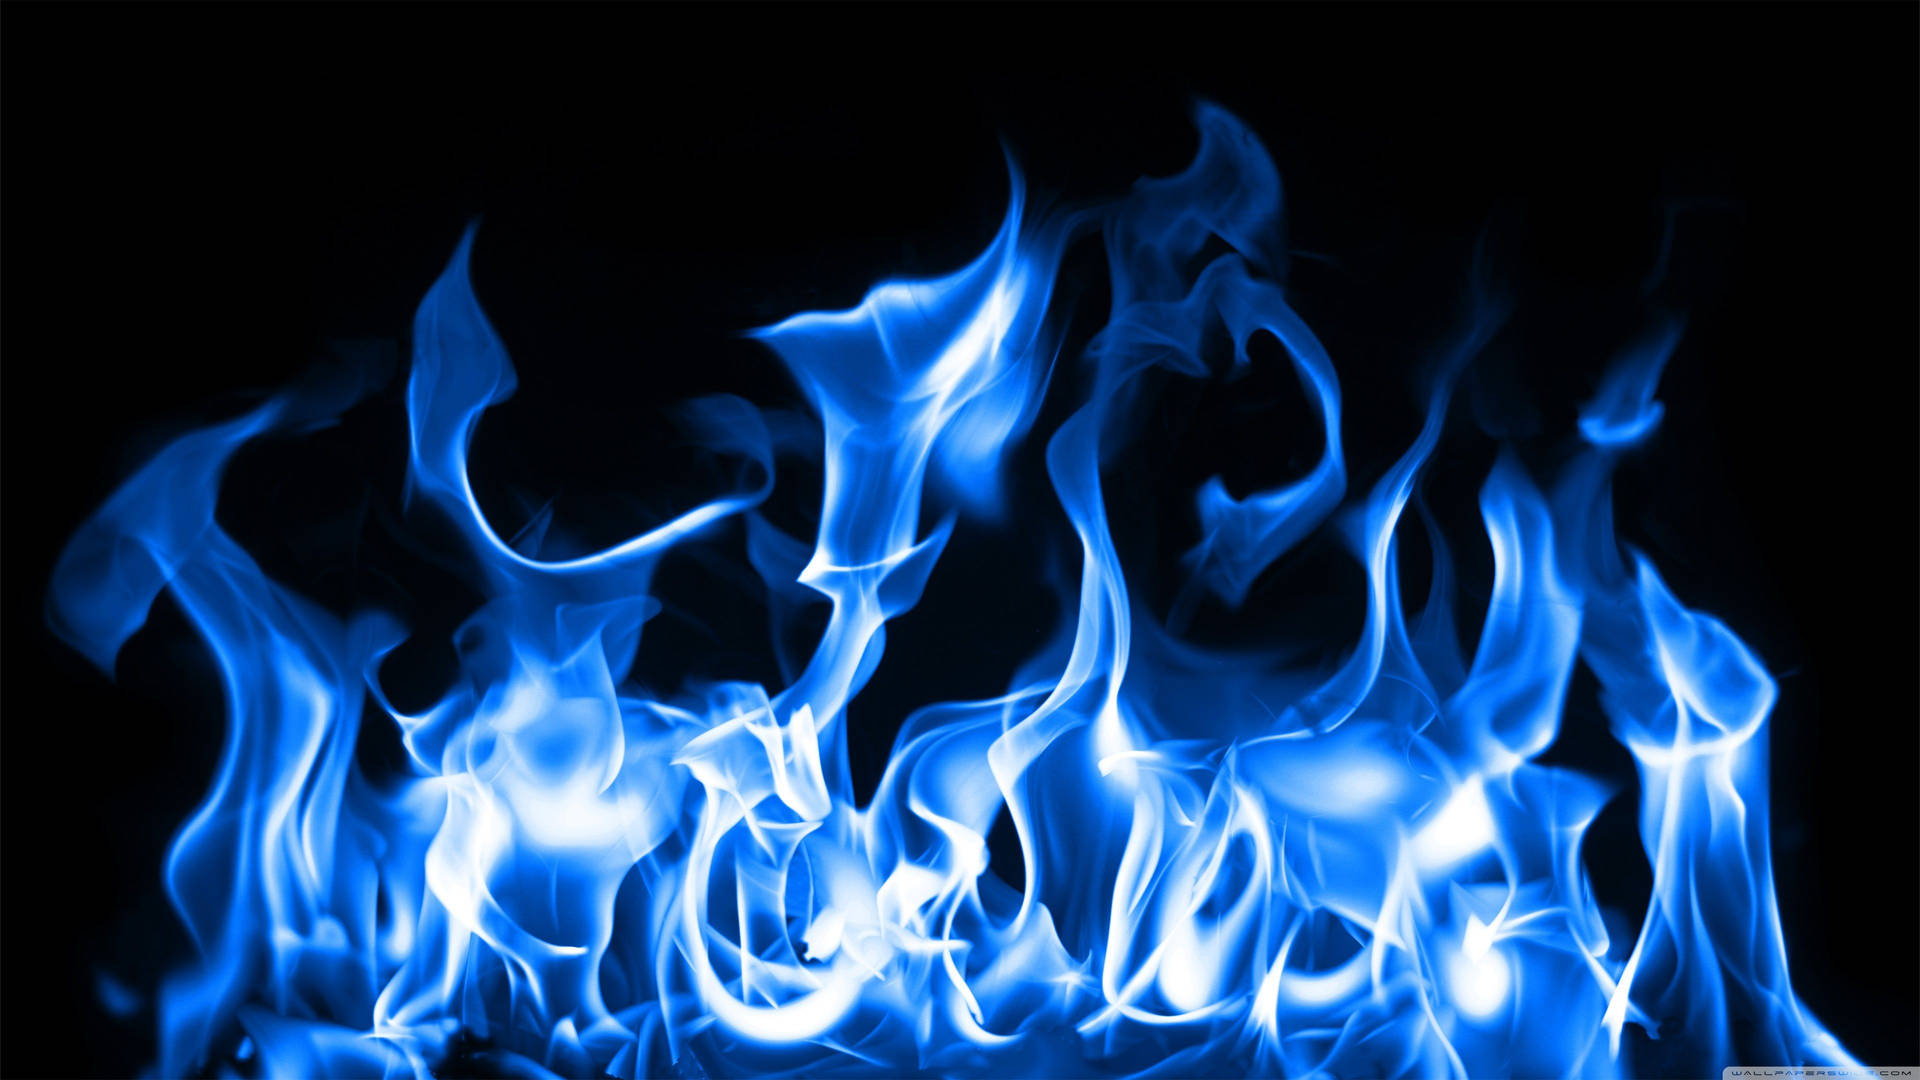 Fiery Blue Fire Background